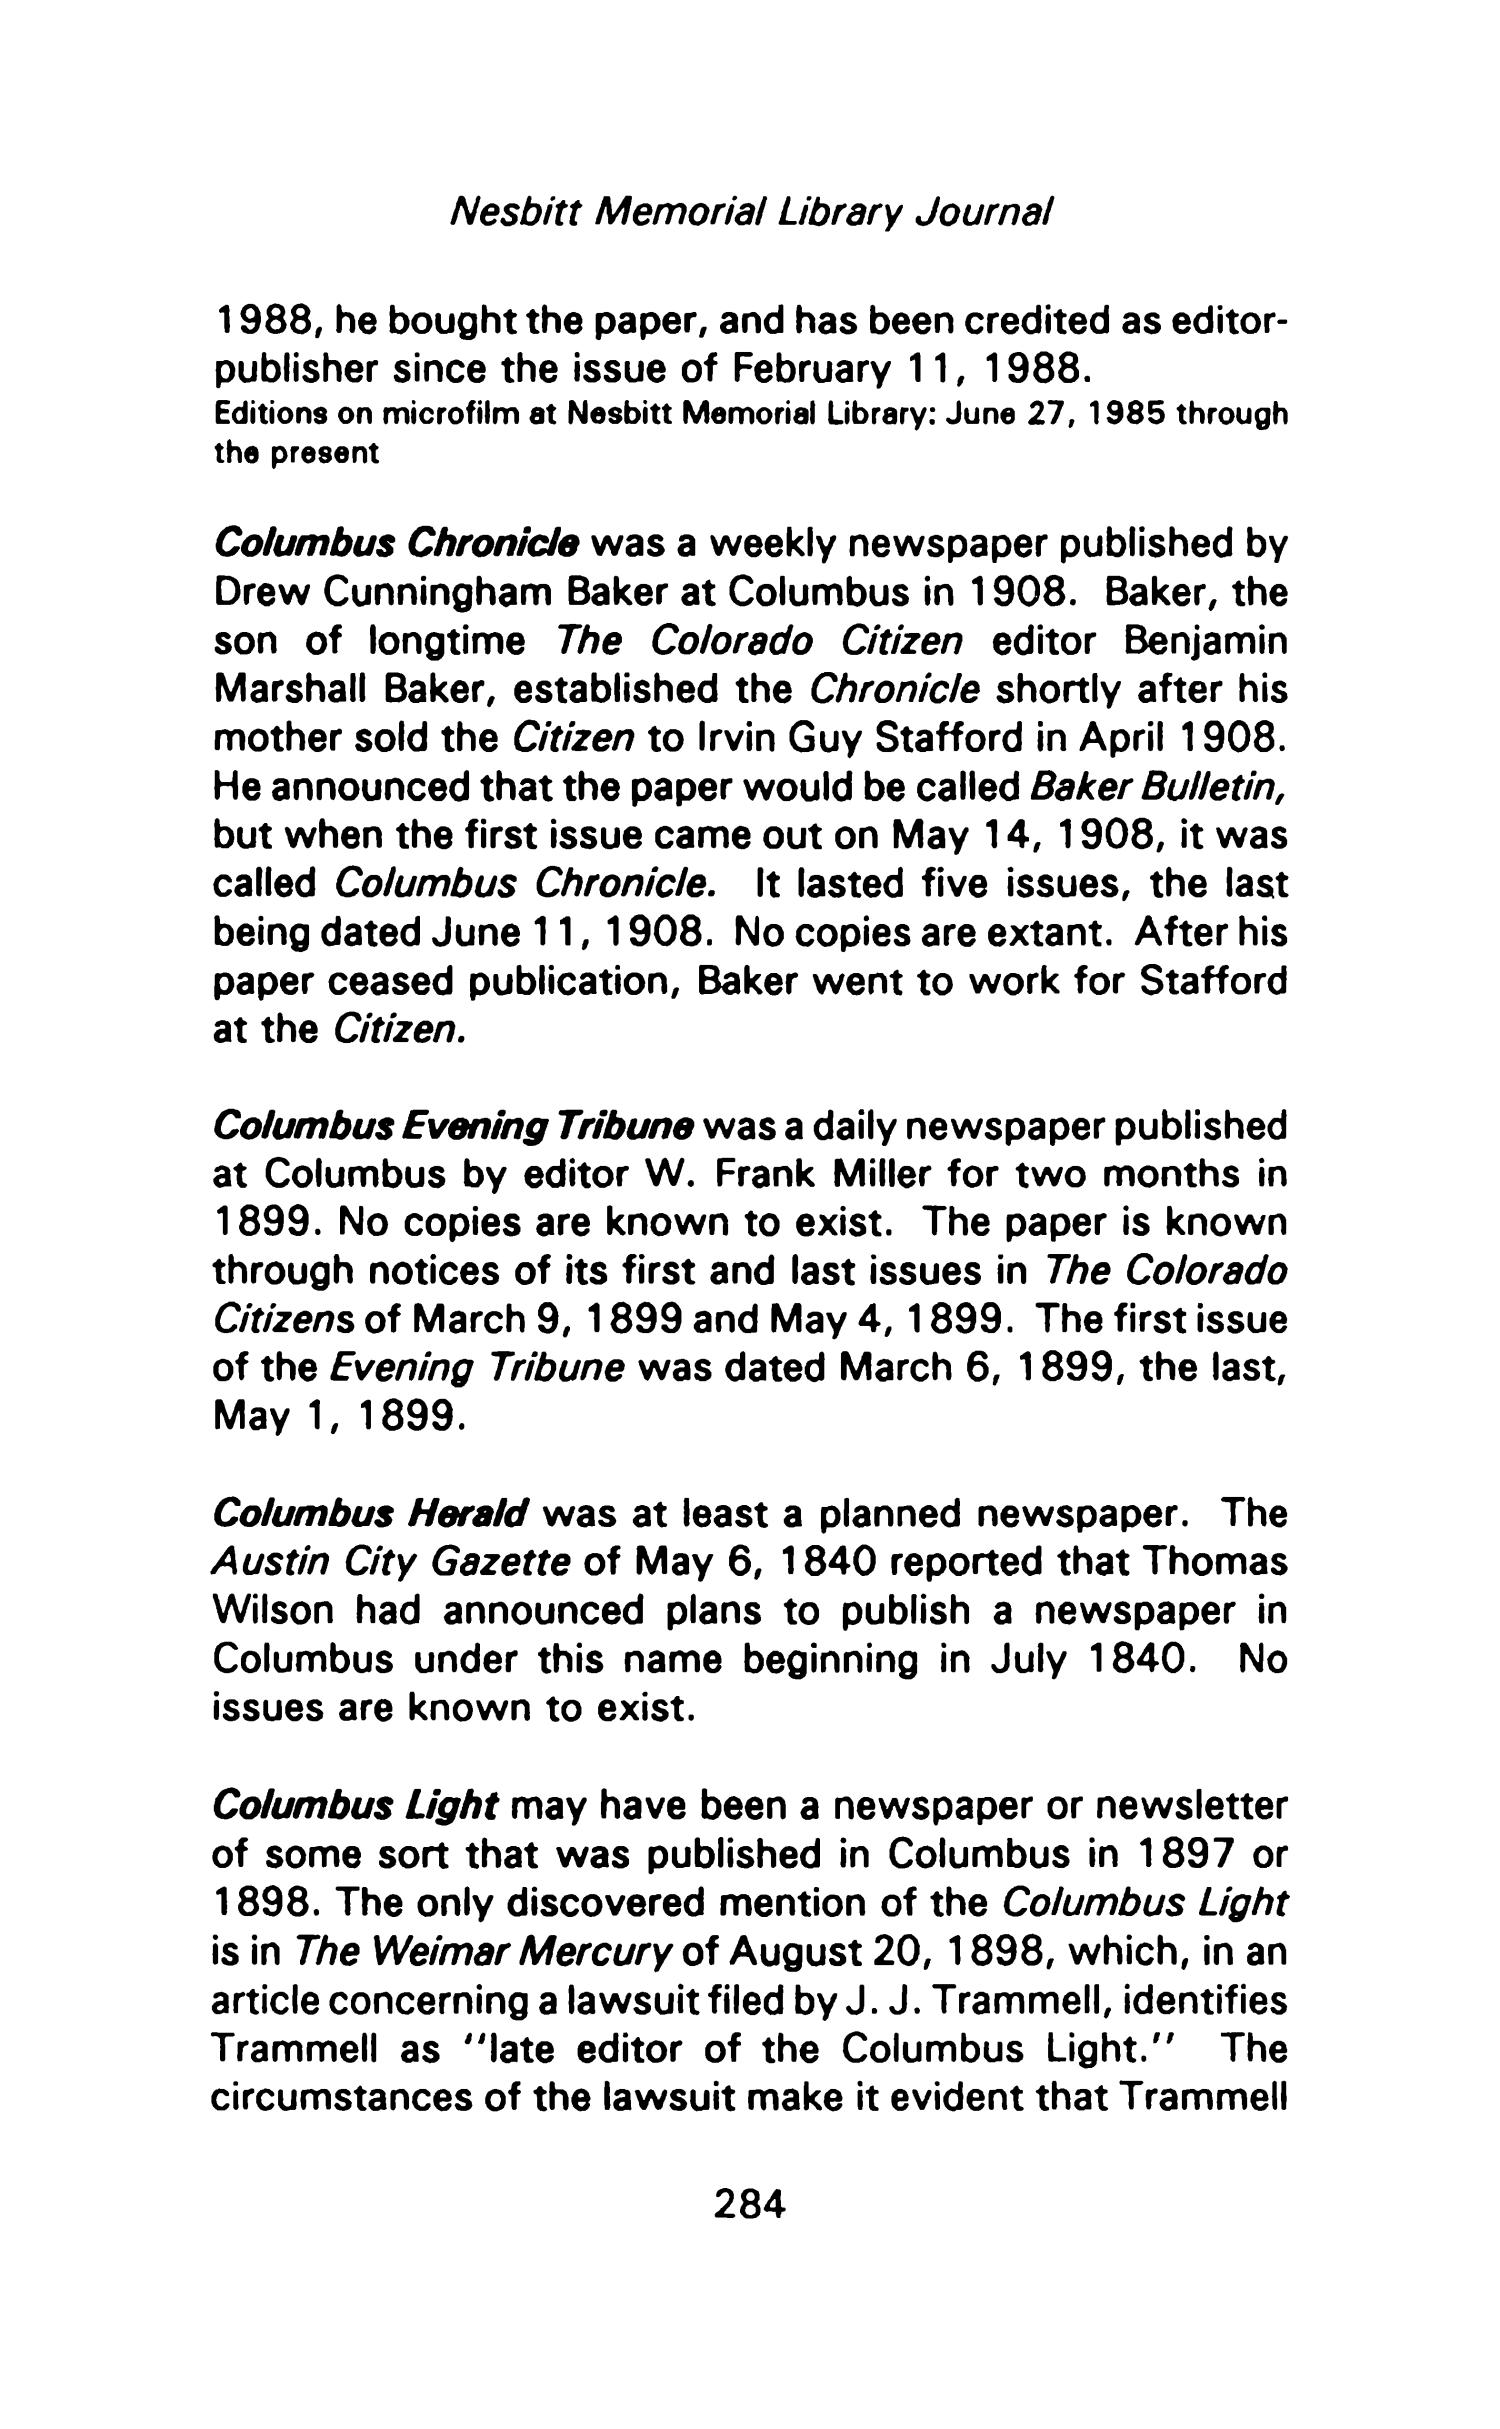 Nesbitt Memorial Library Journal, Volume 1, Number 9, June 1991
                                                
                                                    284
                                                